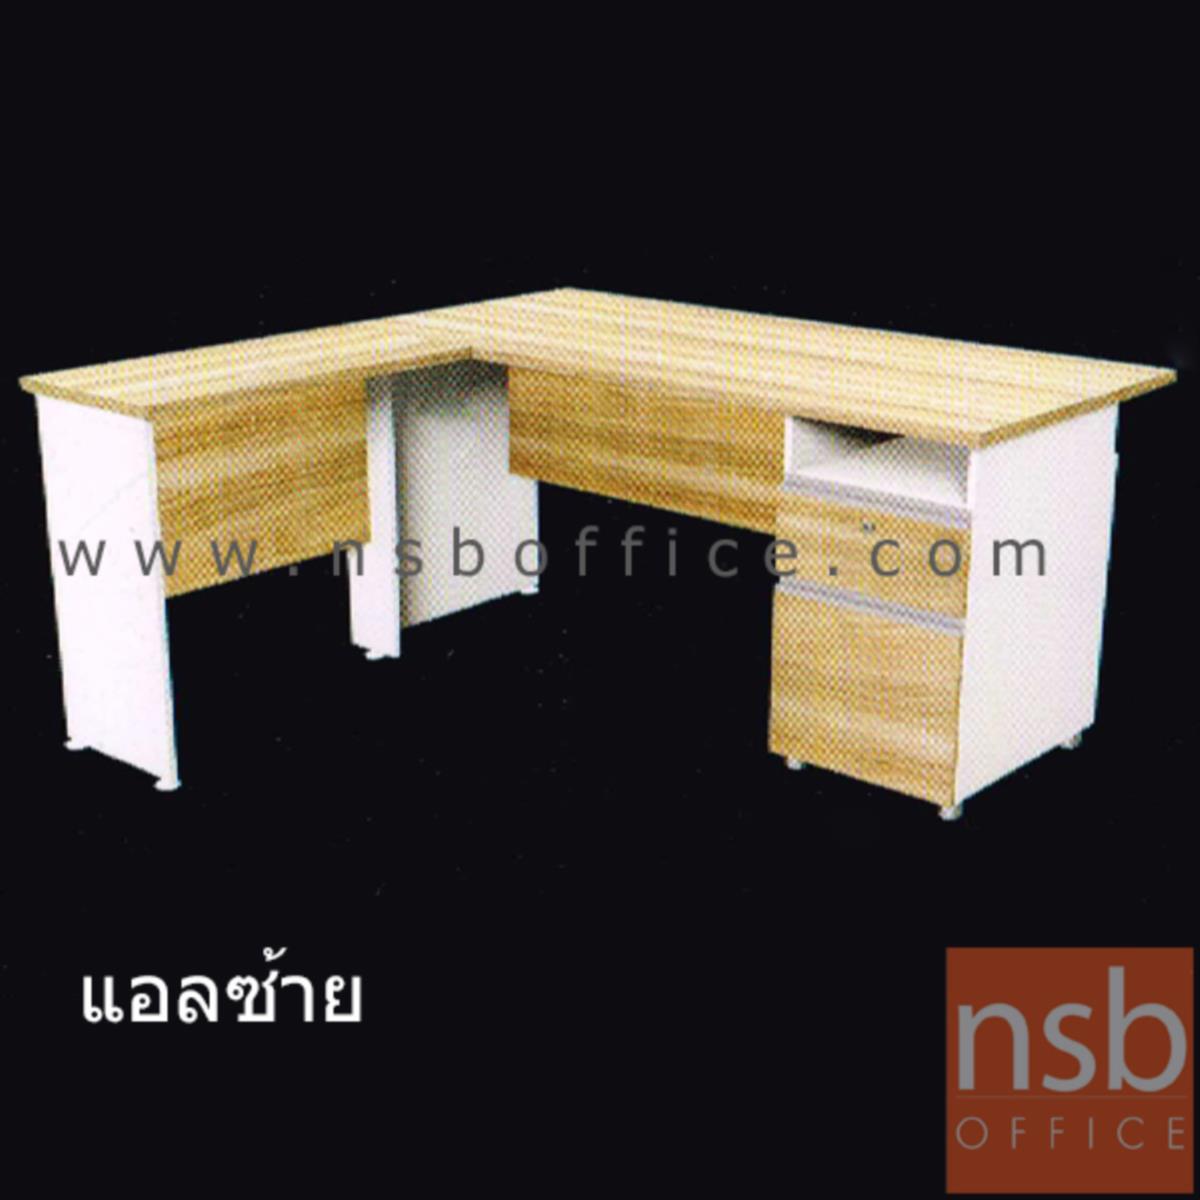 โต๊ะทำงานตัวแอล 2 ลิ้นชัก รุ่น Milbert (มิลเบิร์ต) ขนาด 150W cm. เมลามีน สีเนเจอร์ทีค-ขาว